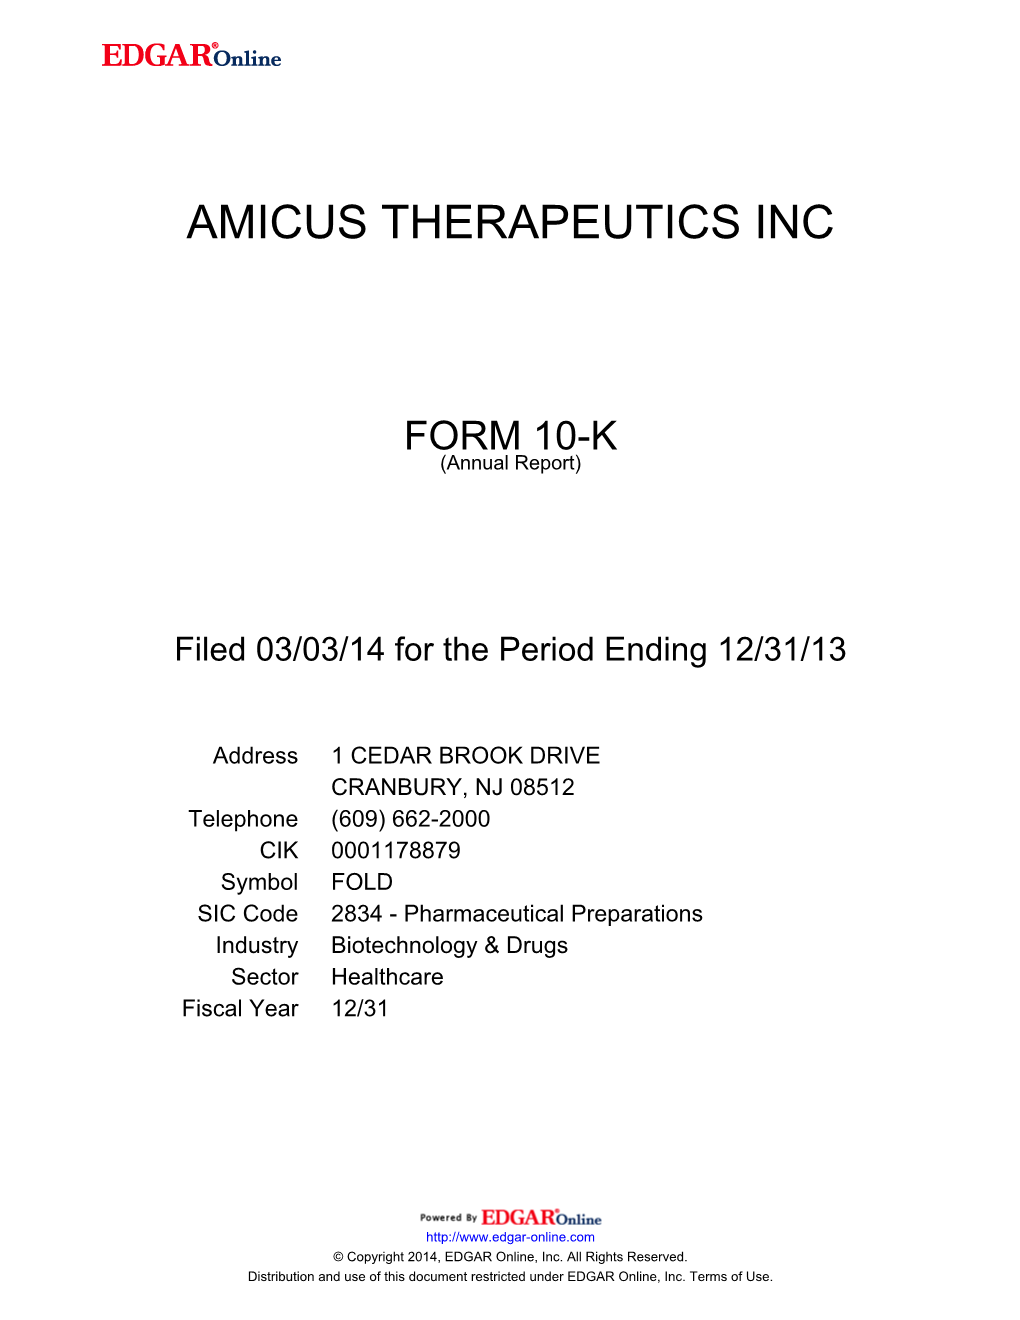 Amicus Therapeutics Inc